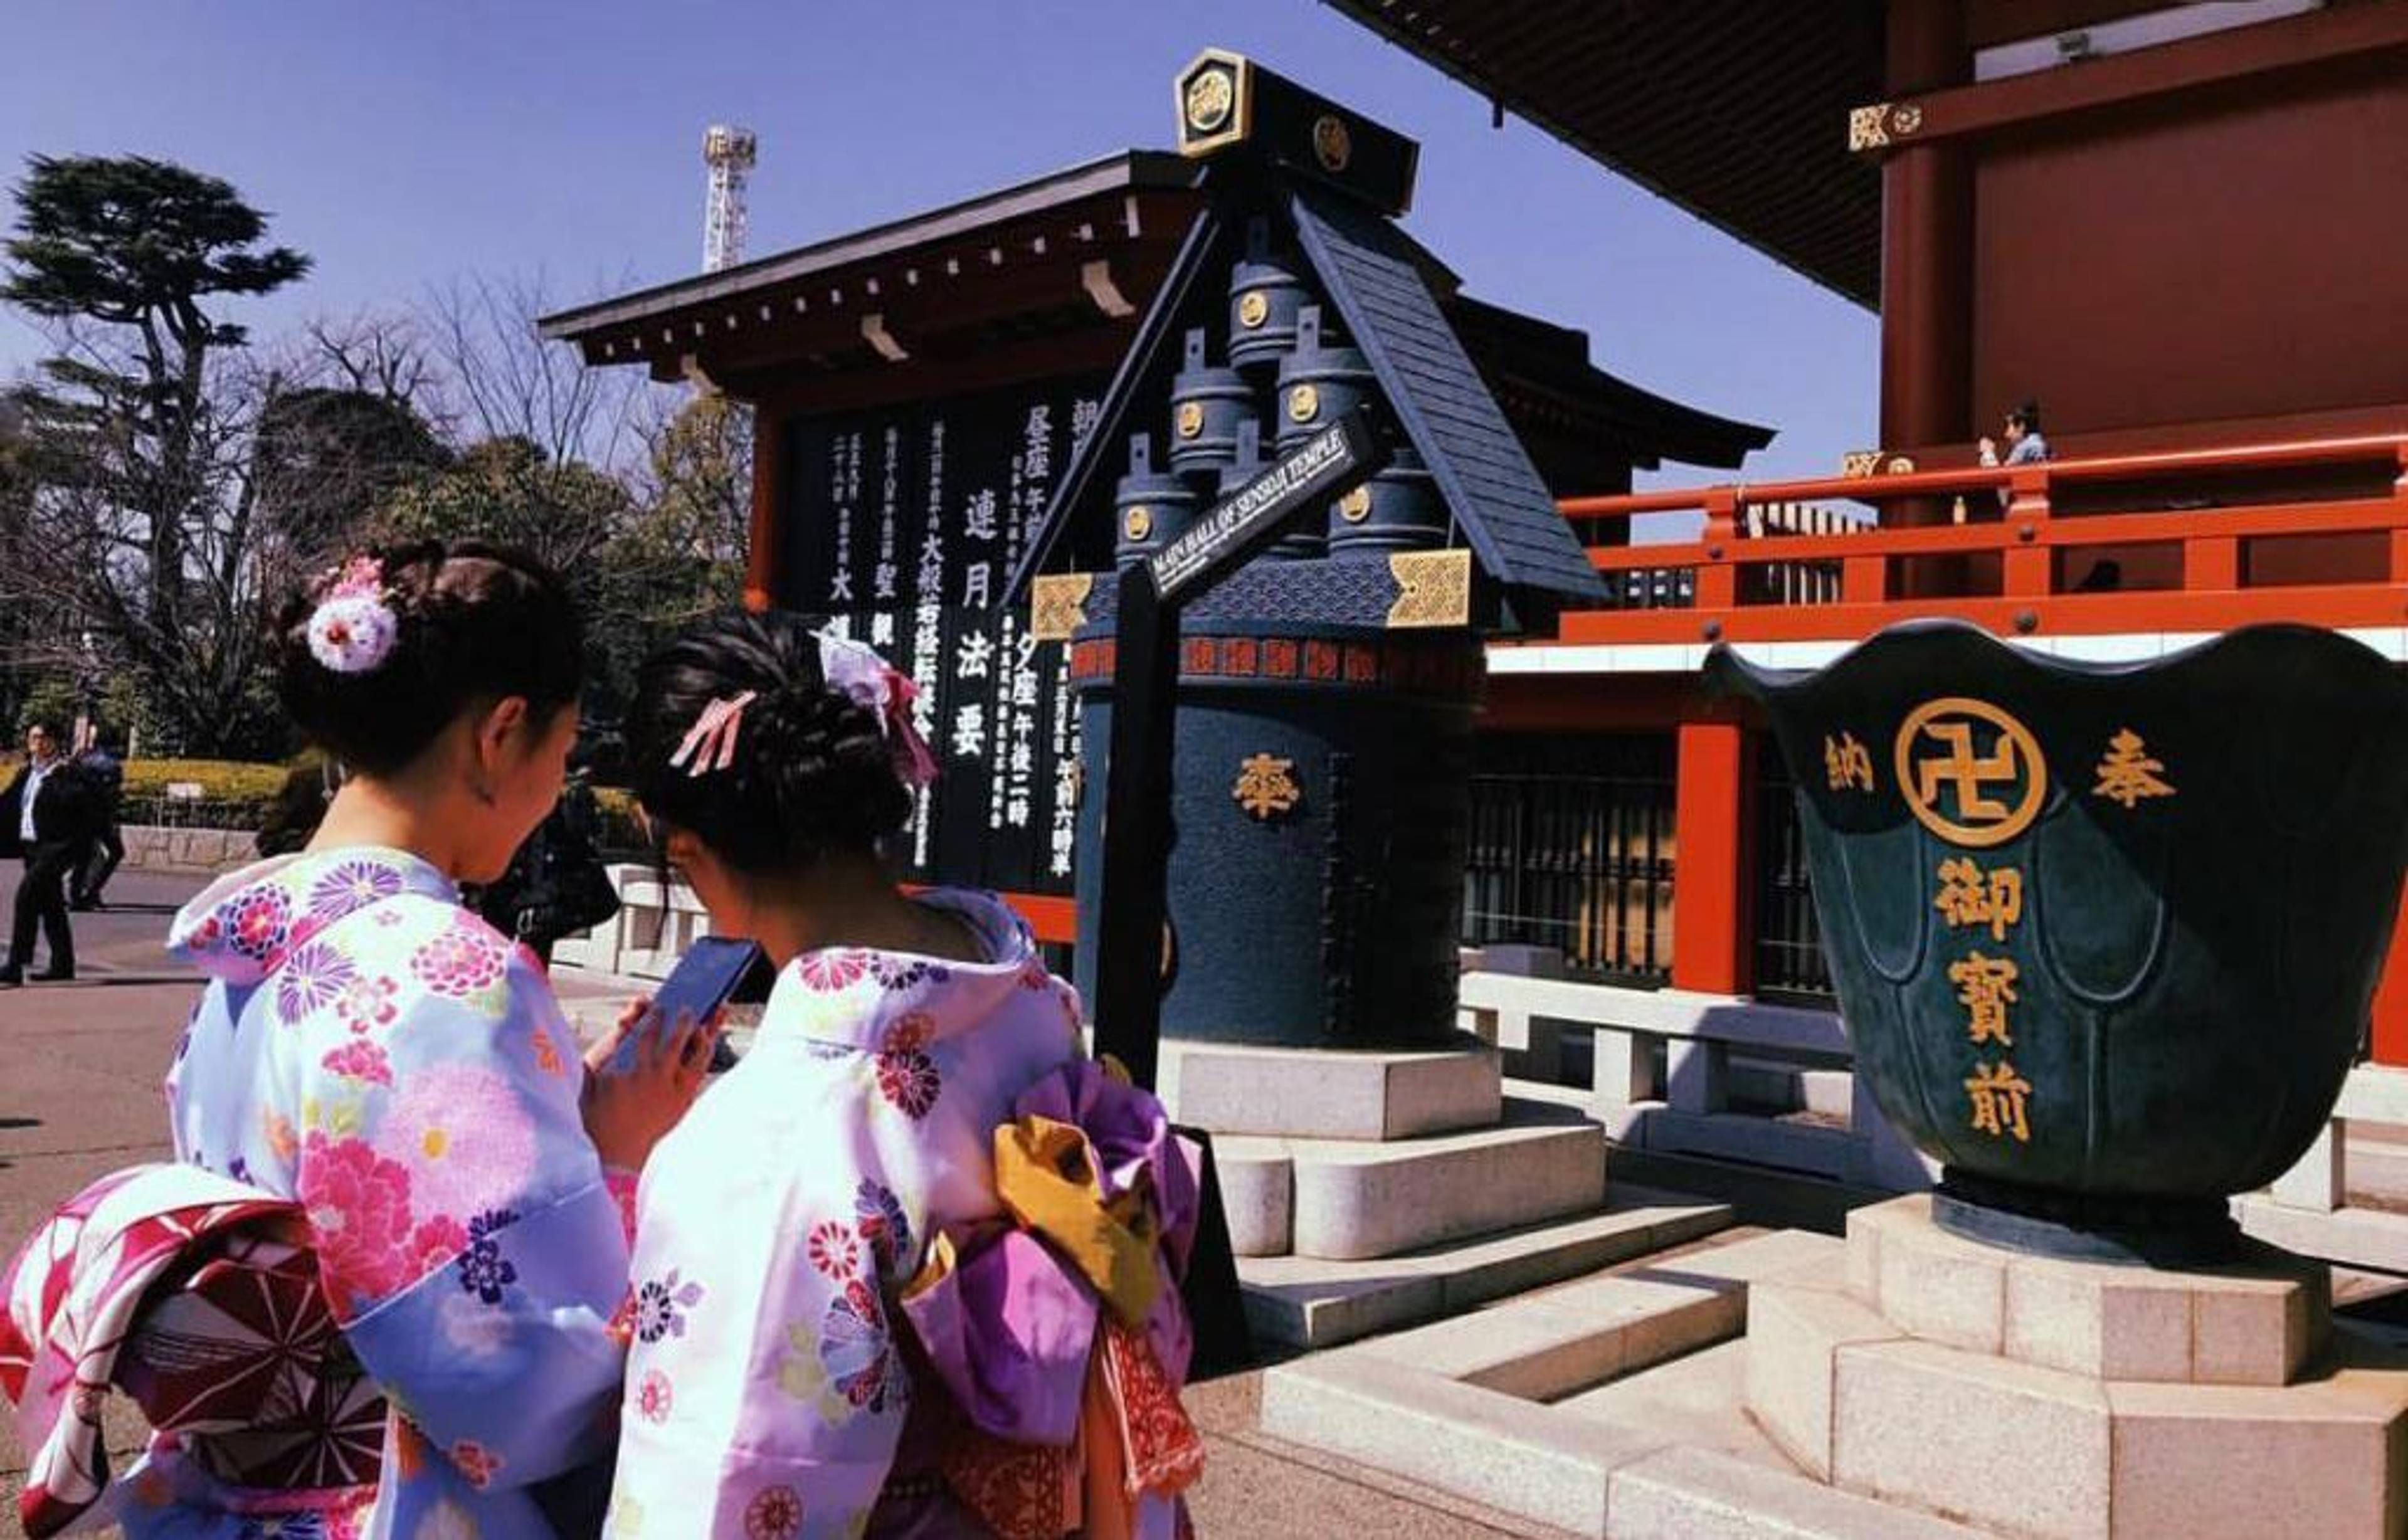 donne giapponesi vestite con abiti tradizionali per le strade di tokyo